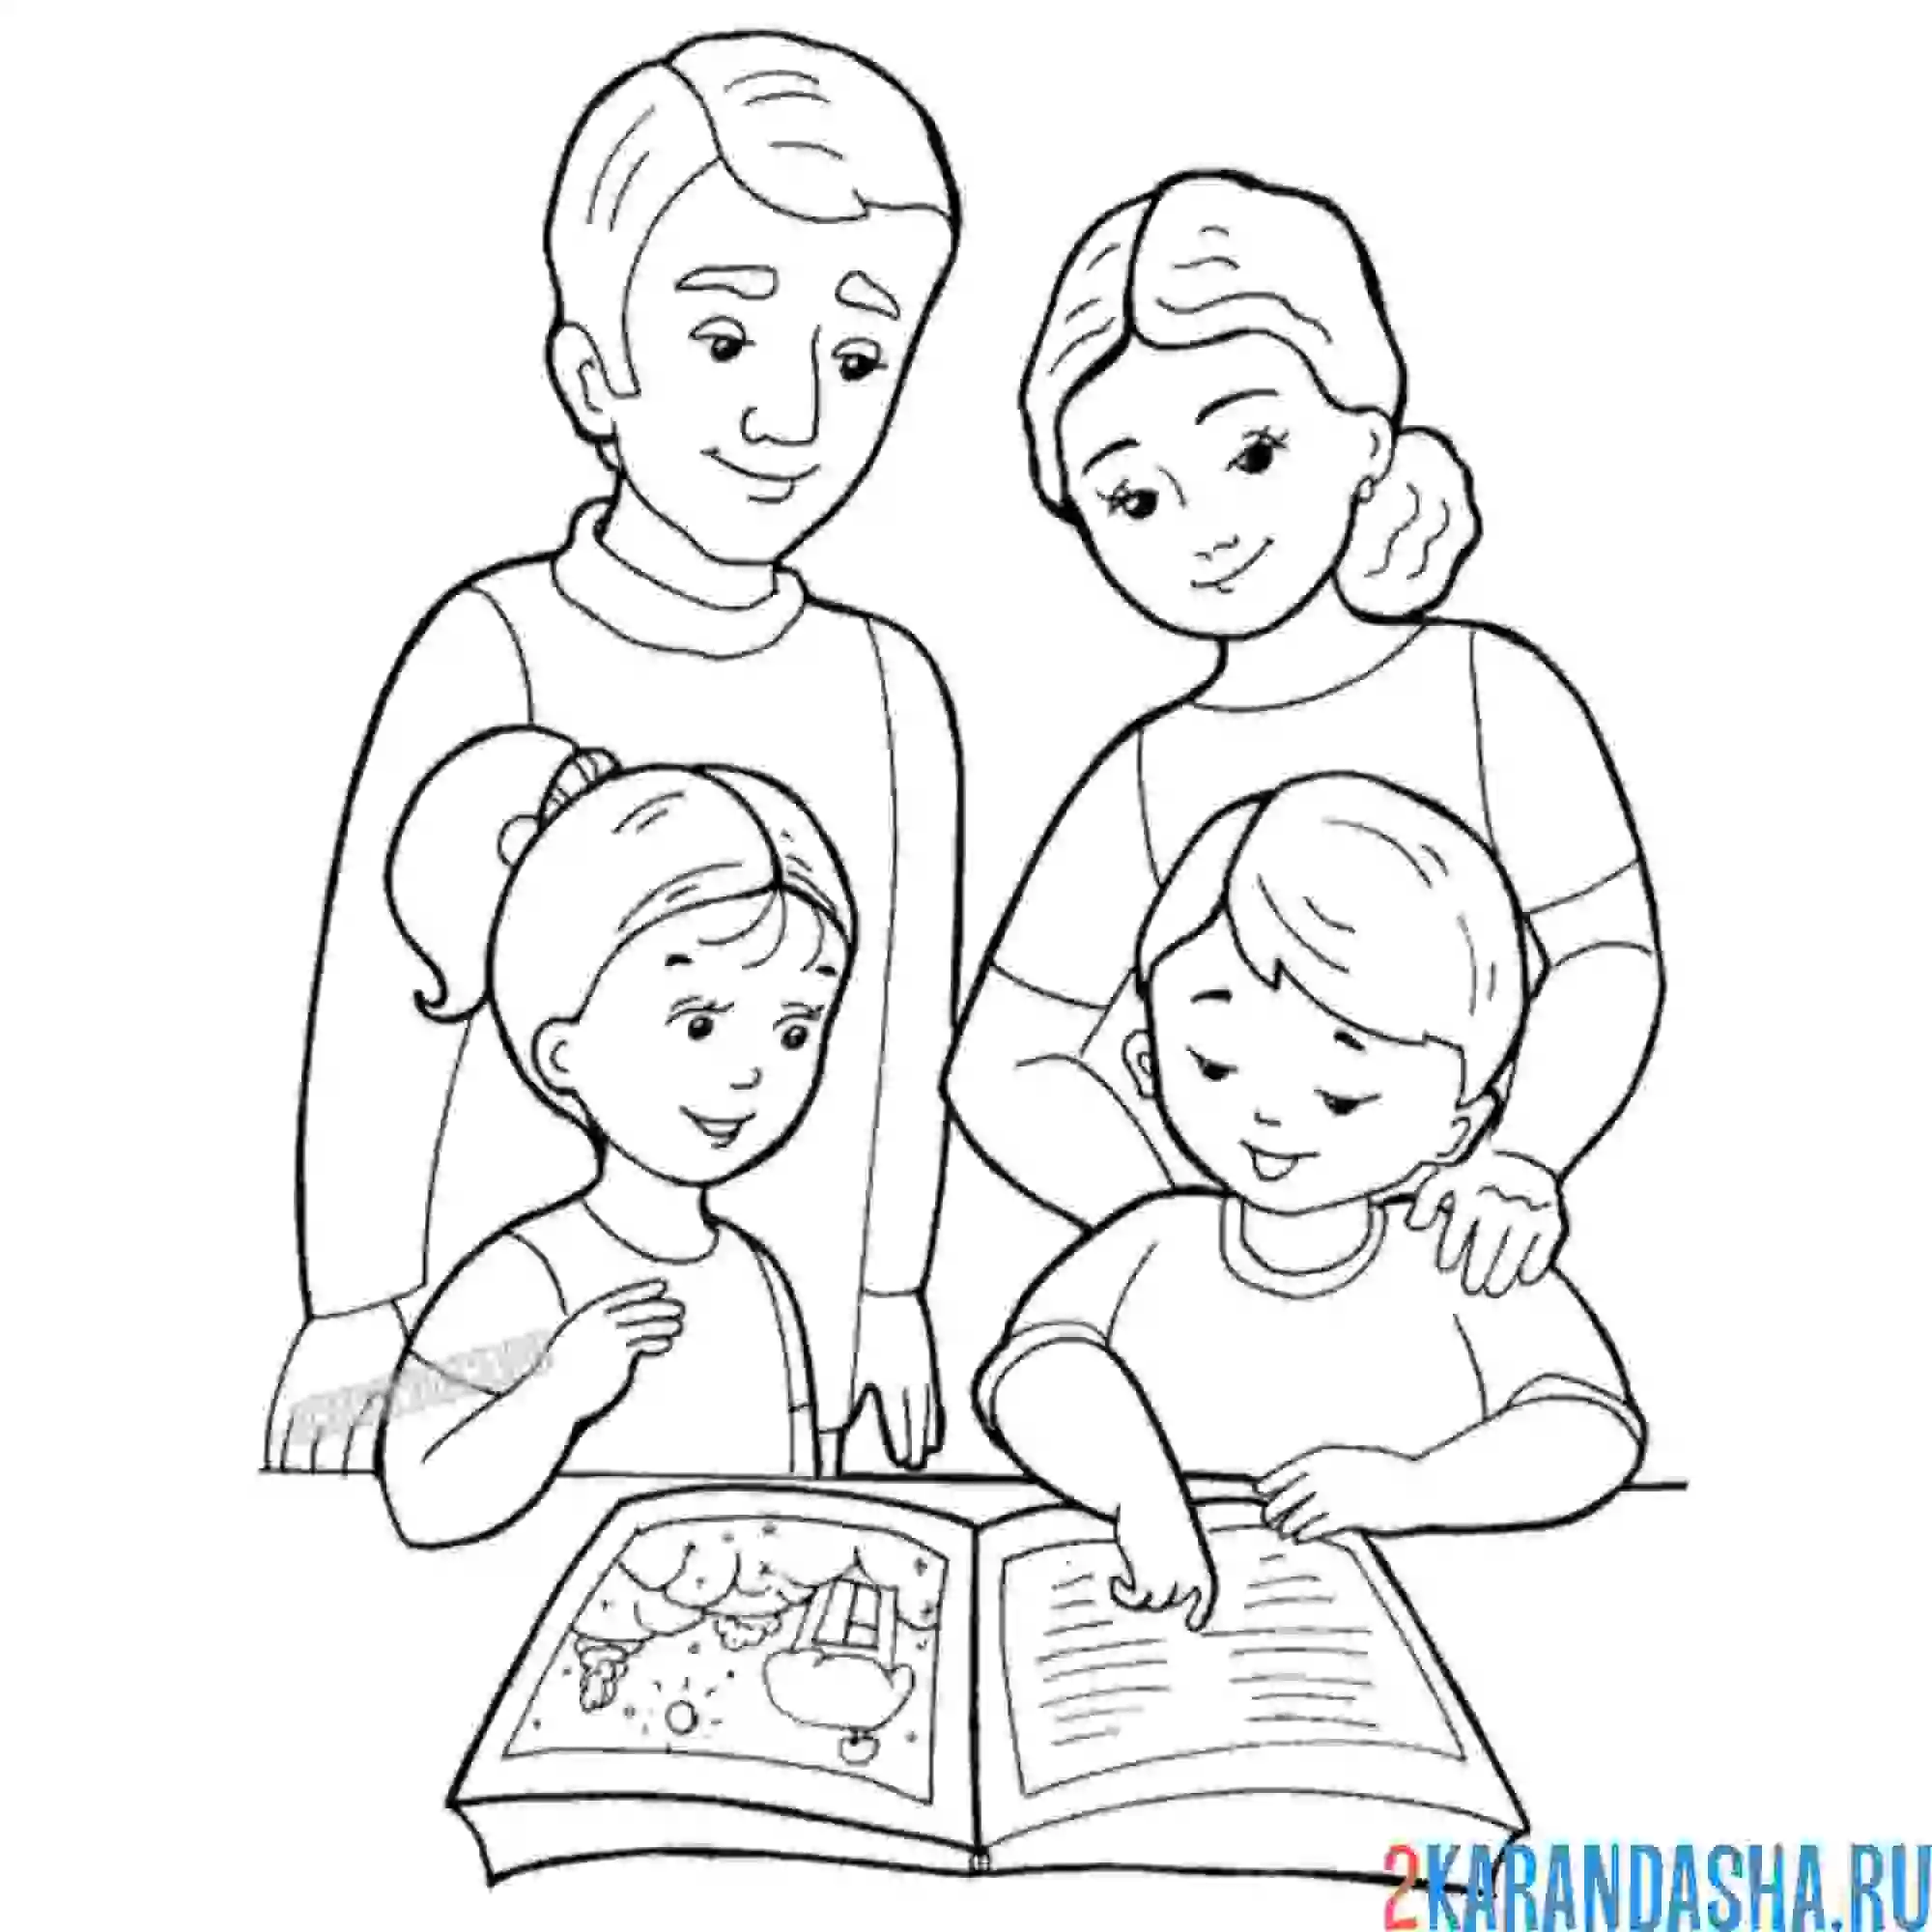 Раскраска семья: мама, папа, братик и сестра читают